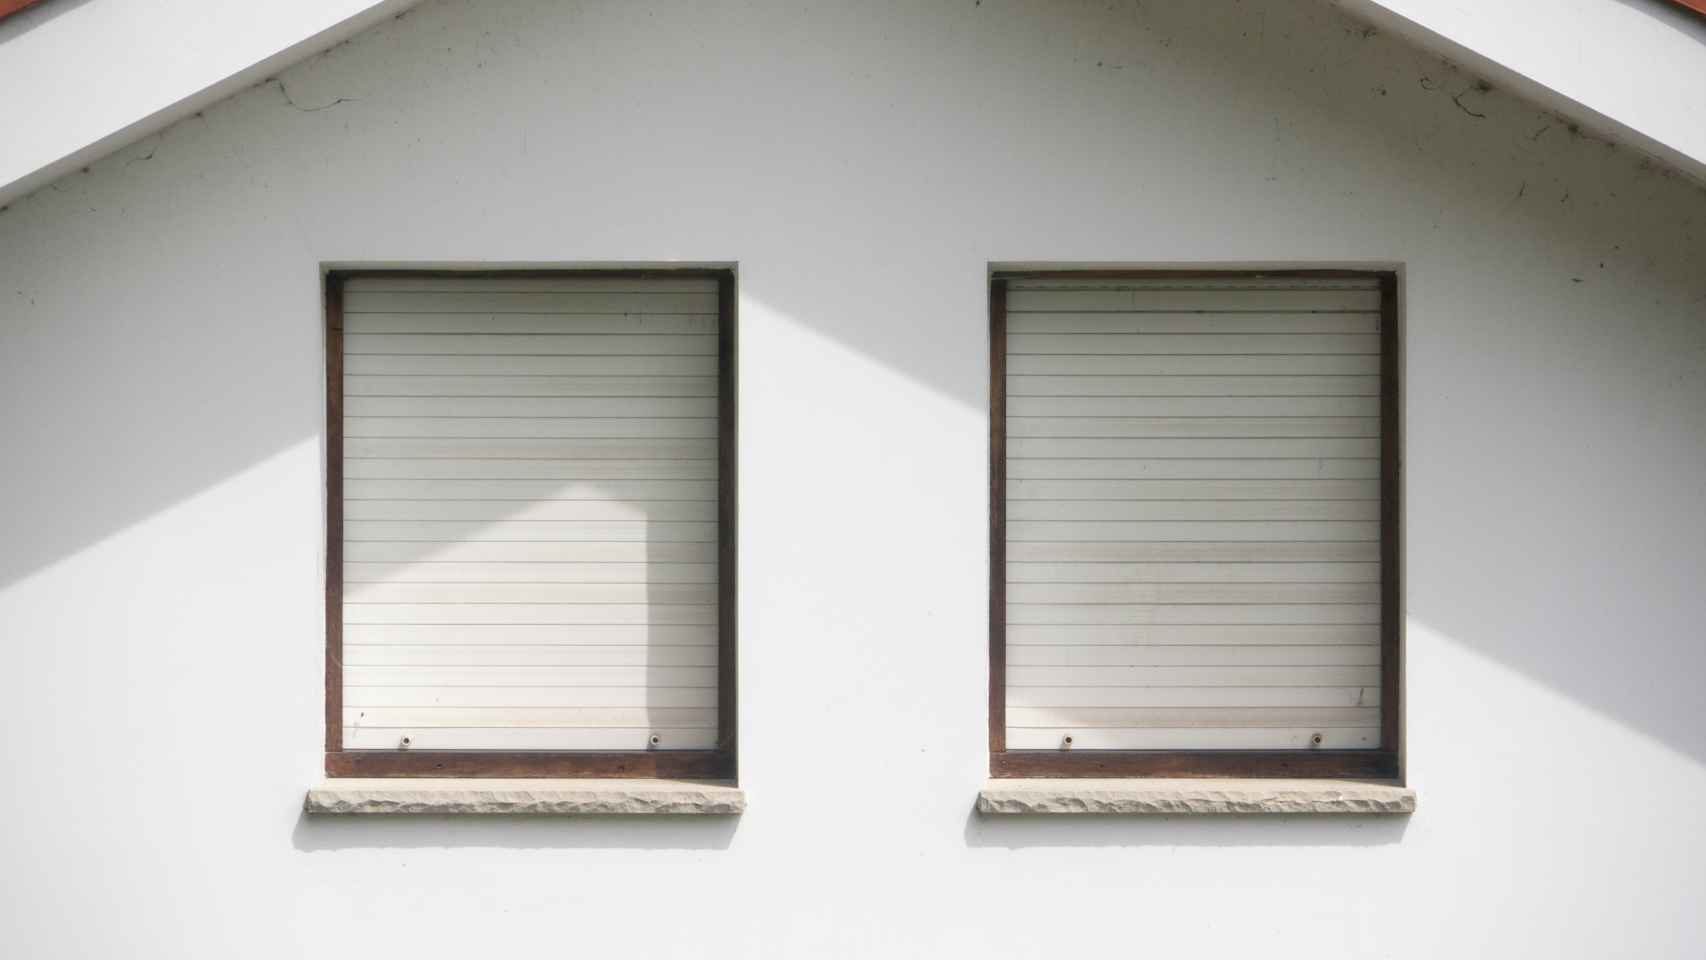 LIMPIAR PERSIANAS: Cómo limpiar las ventanas y las persianas por fuera